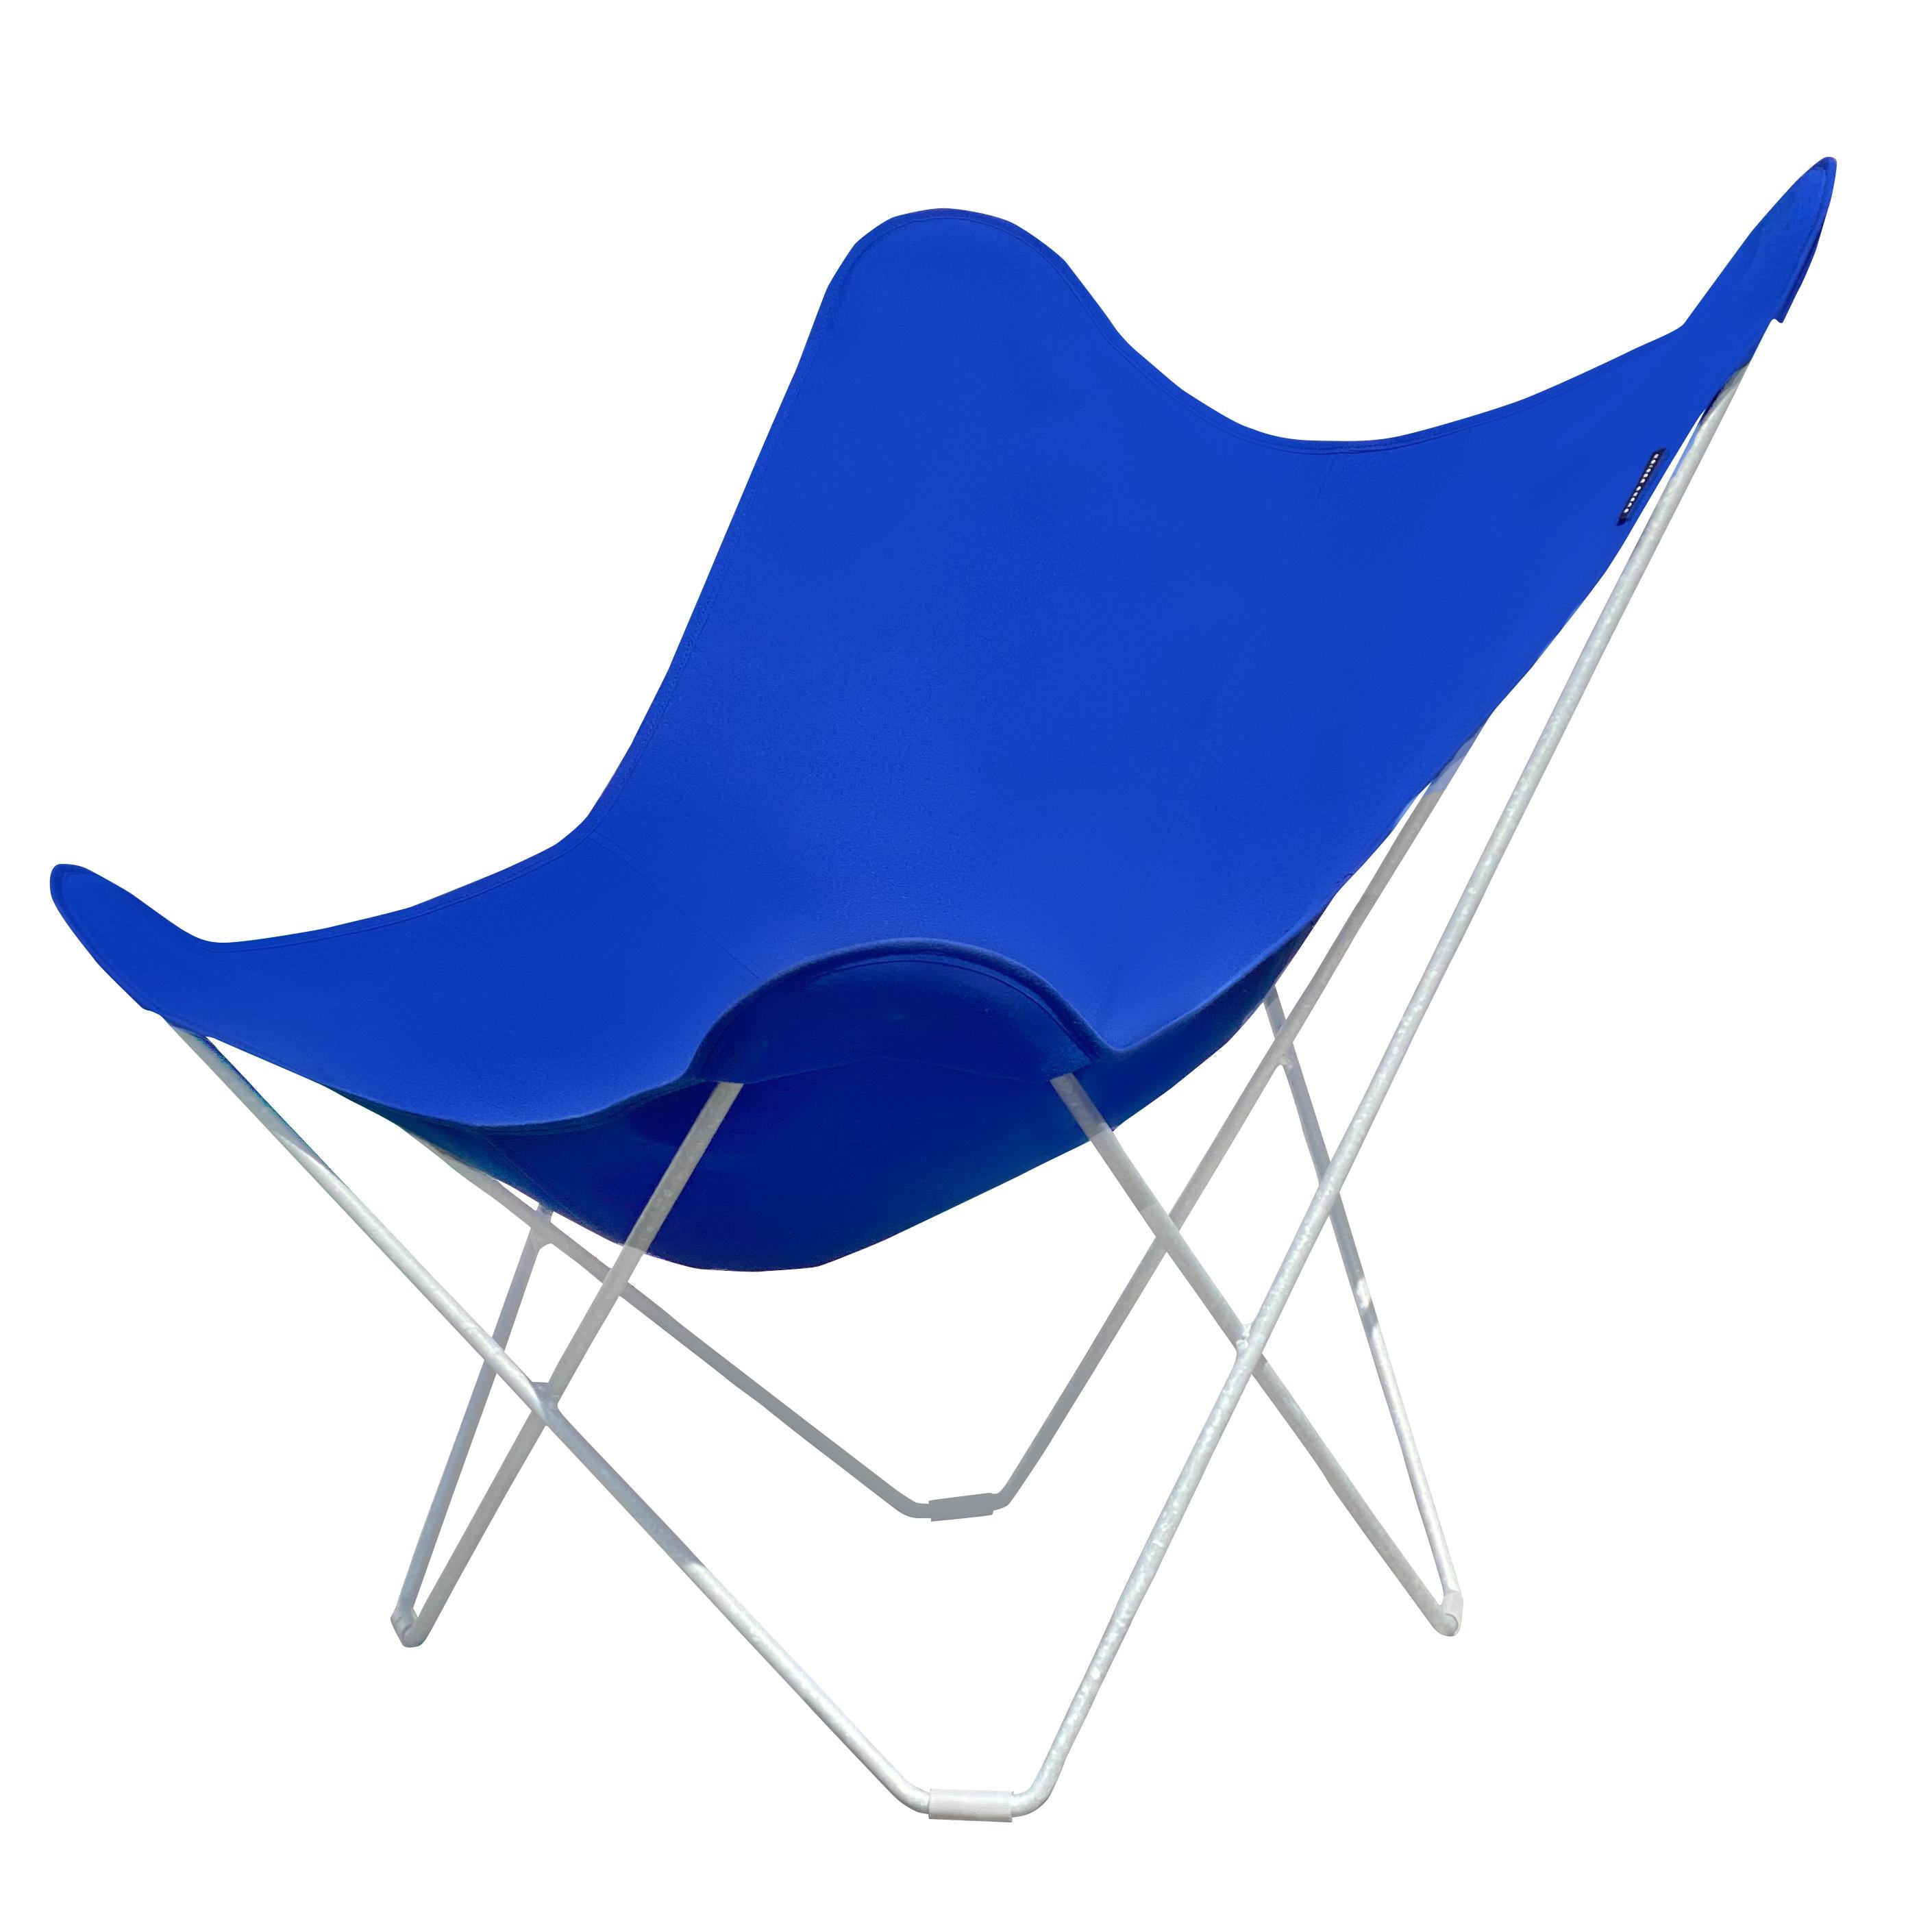 Cuero Auringonpaiste mariposa -perhonen tuoli, Atlantin sininen/harmaa ulkosäkehys